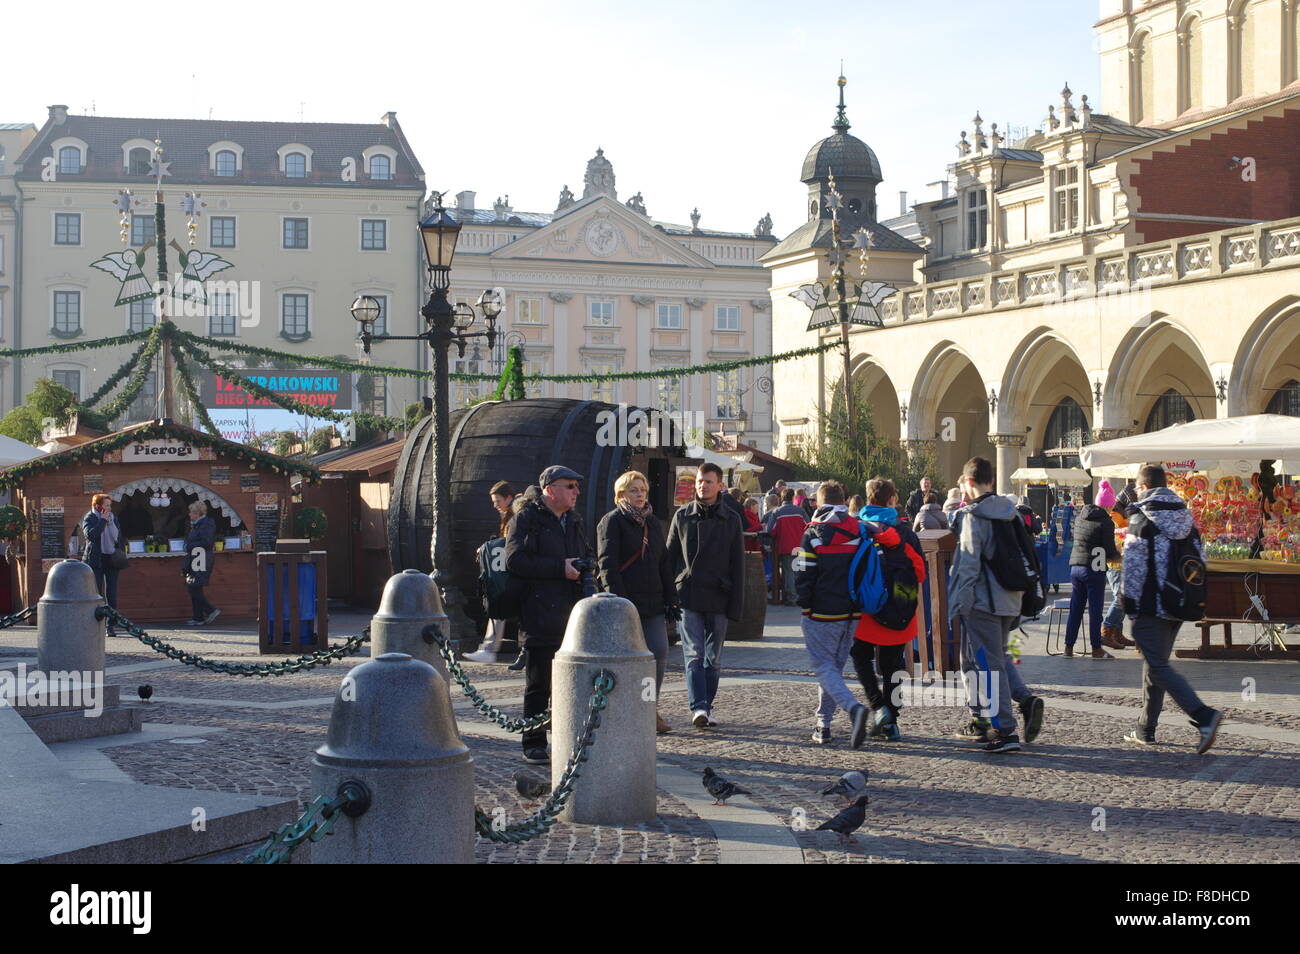 Cracovie, Foire de Noël sur la place du marché. Stals avec de la nourriture, des boissons et des ornementations de Noël. Banque D'Images